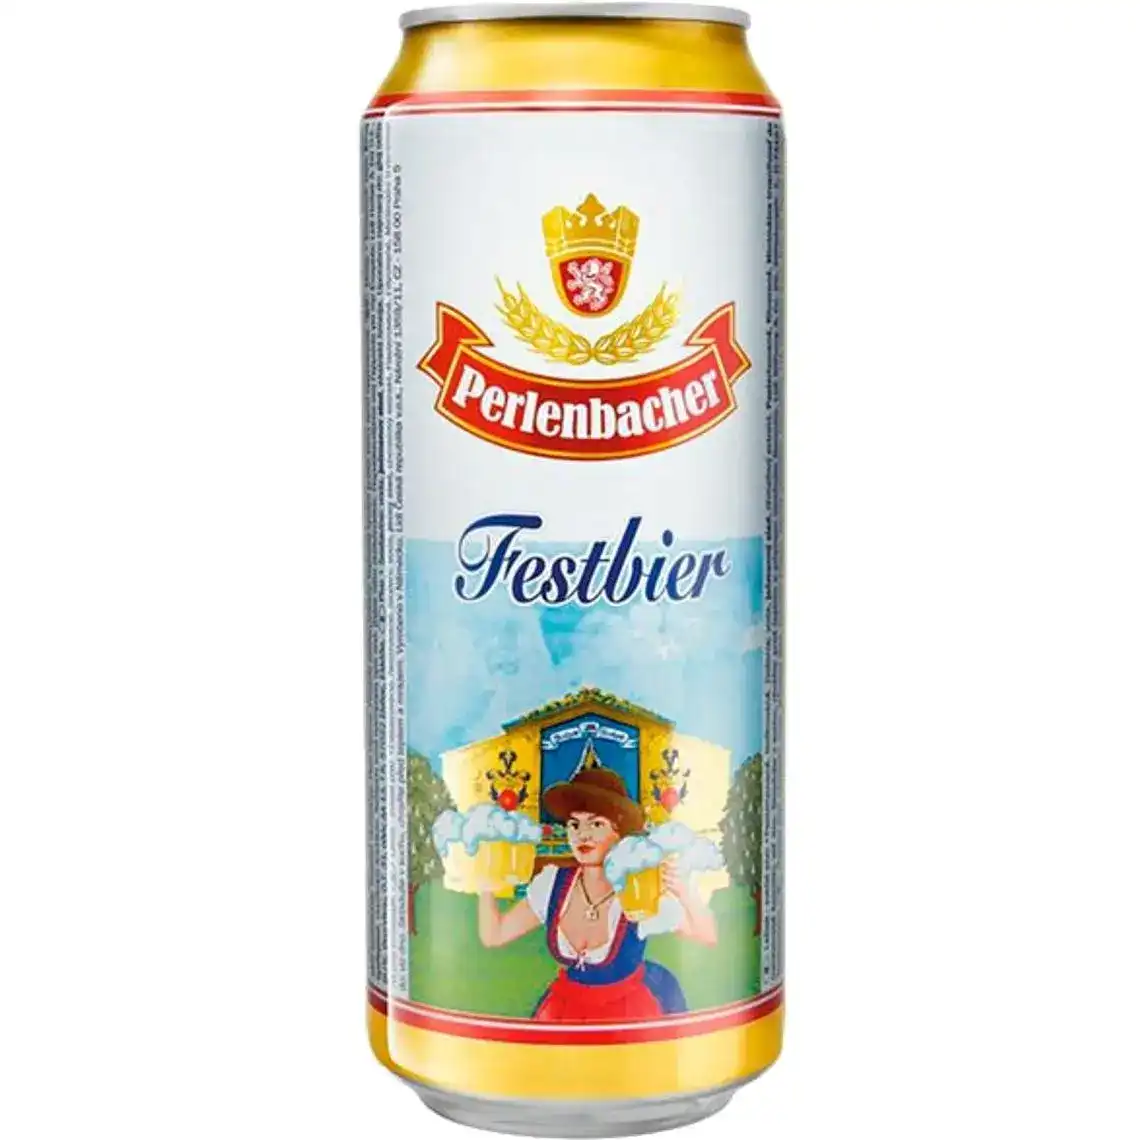 Пиво Perlenbacher Festbier світле фільтроване 5.5% 0.5 л